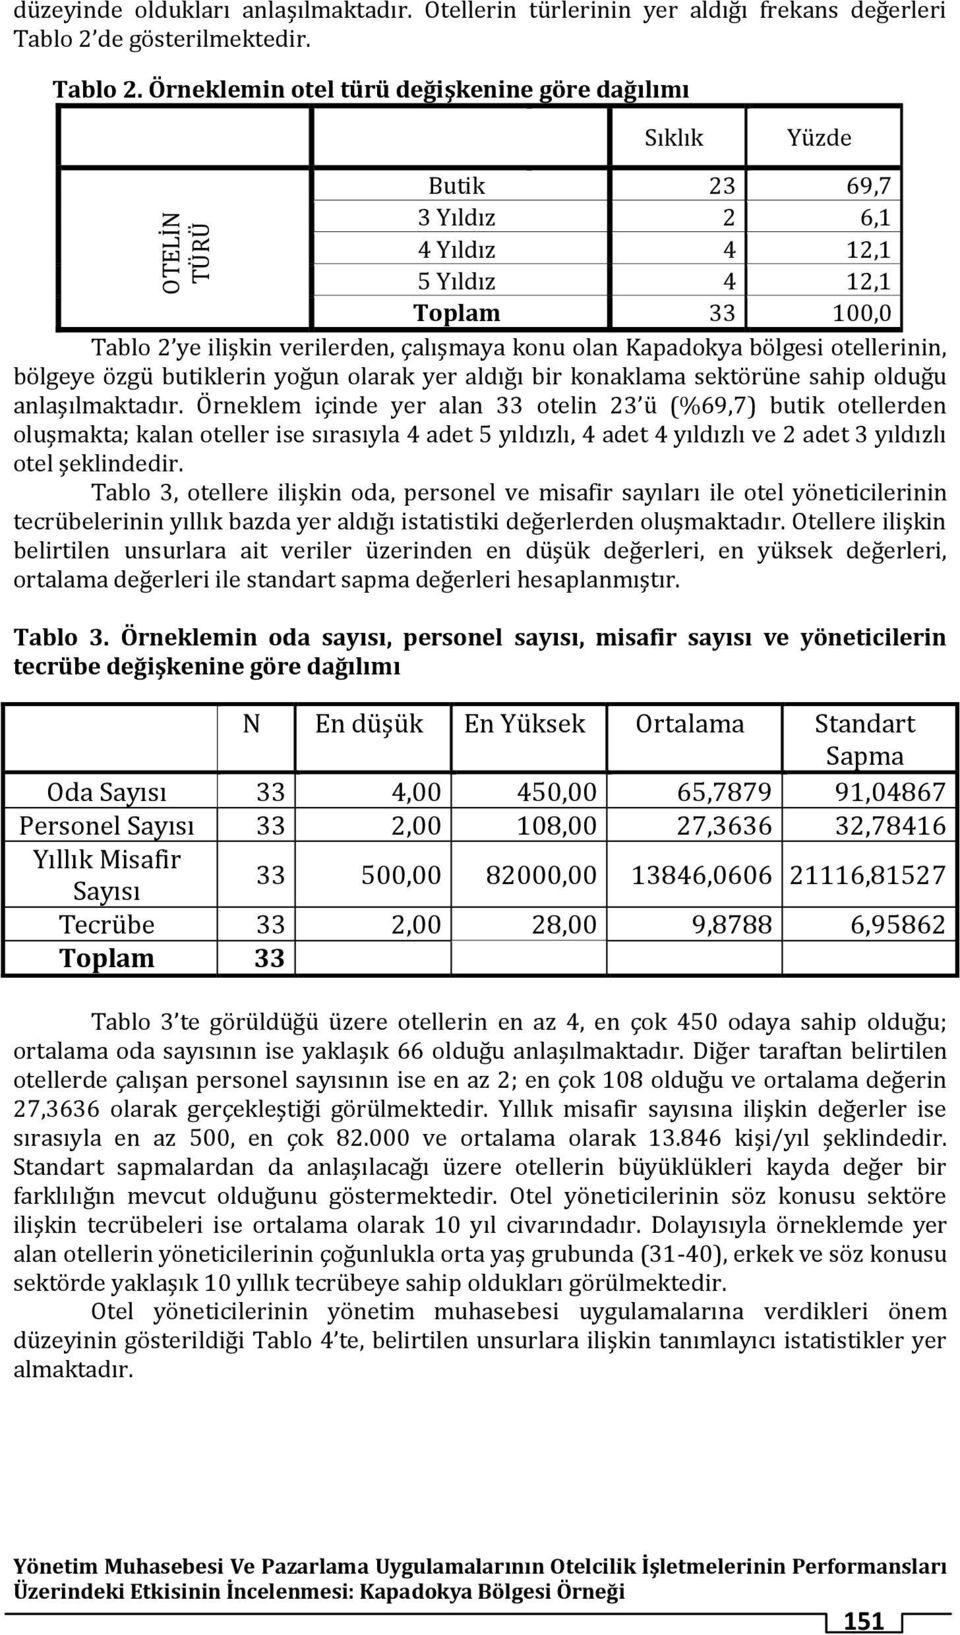 Örneklemin otel türü değişkenine göre dağılımı Sıklık Yüzde Butik 23 69,7 3 Yıldız 2 6,1 4 Yıldız 4 12,1 5 Yıldız 4 12,1 Toplam 33 100,0 Tablo 2 ye ilişkin verilerden, çalışmaya konu olan Kapadokya